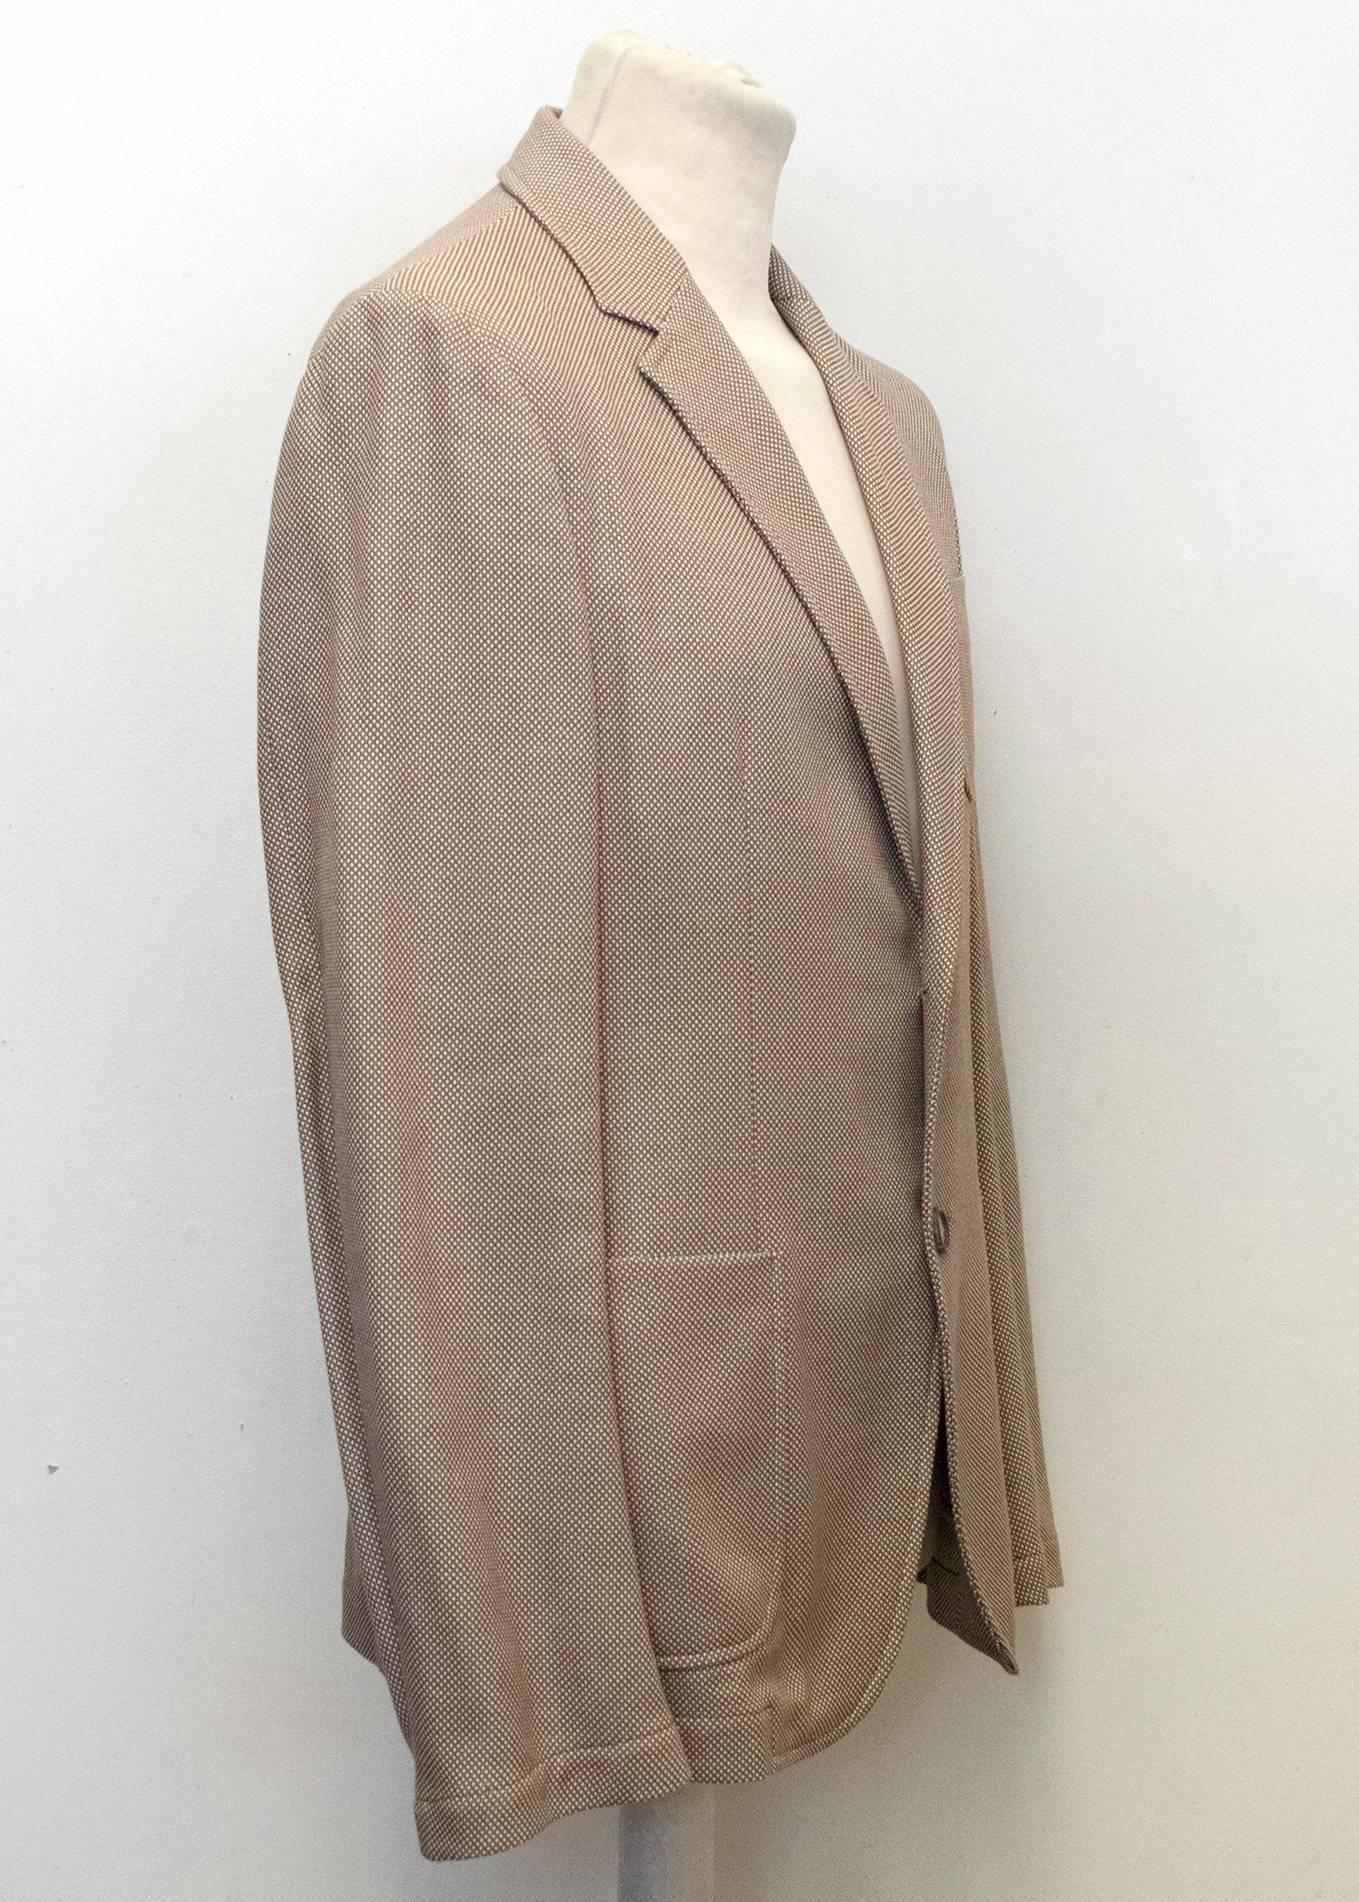 Alexander McQueen Men's Brown Tweed Relaxed Fit Blazer  For Sale 1